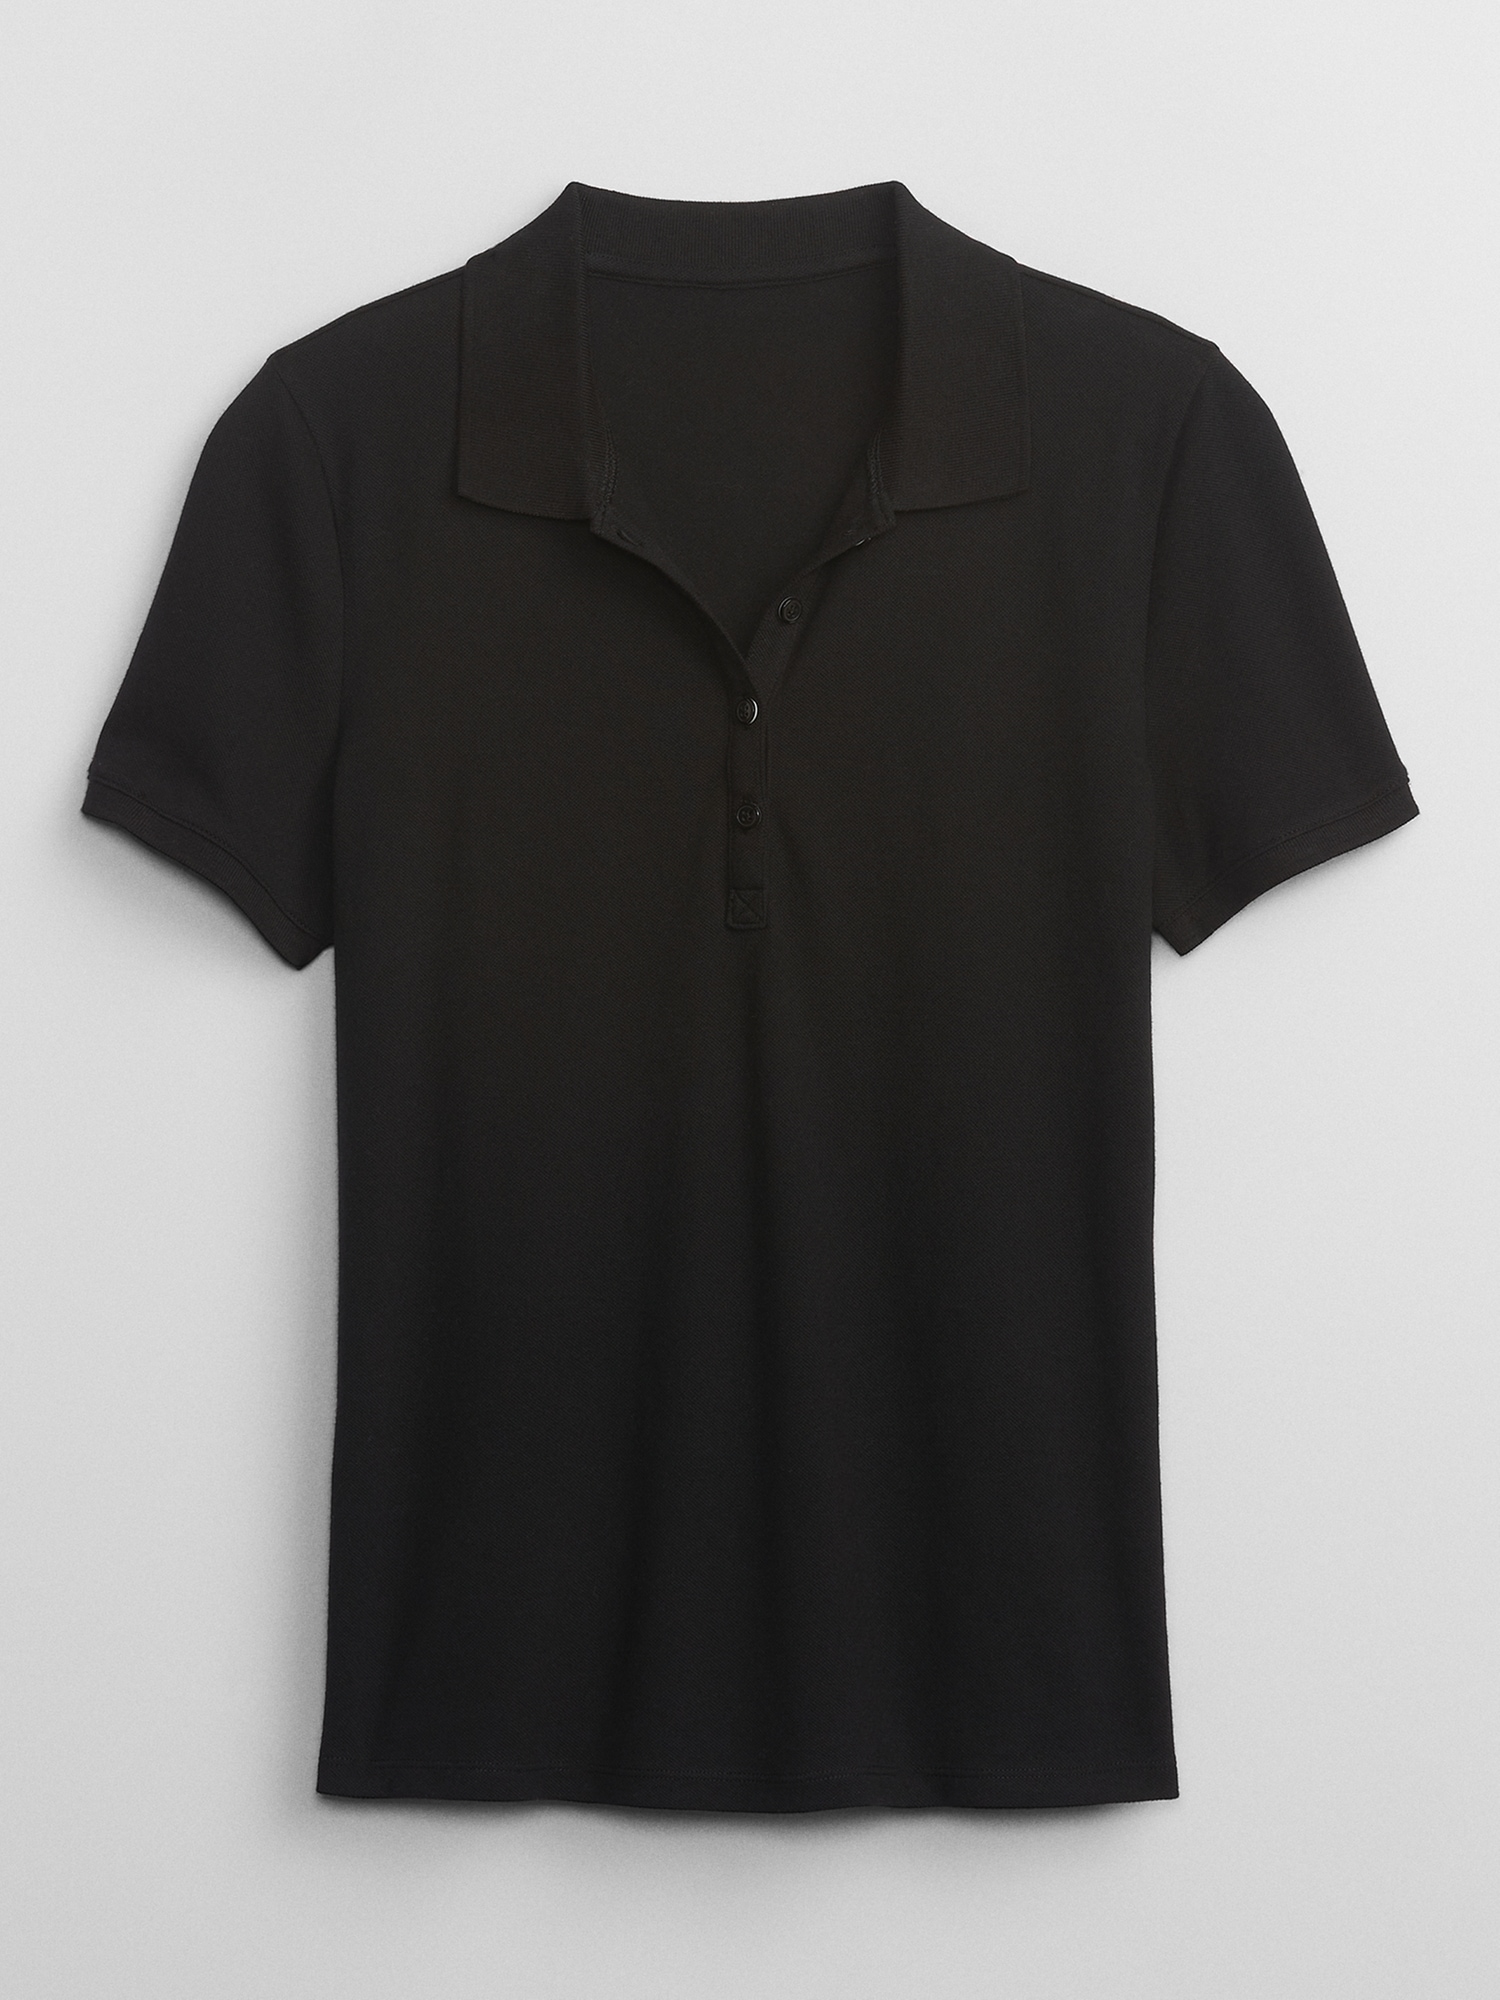 Stretch Pique Polo Shirt | Gap Factory